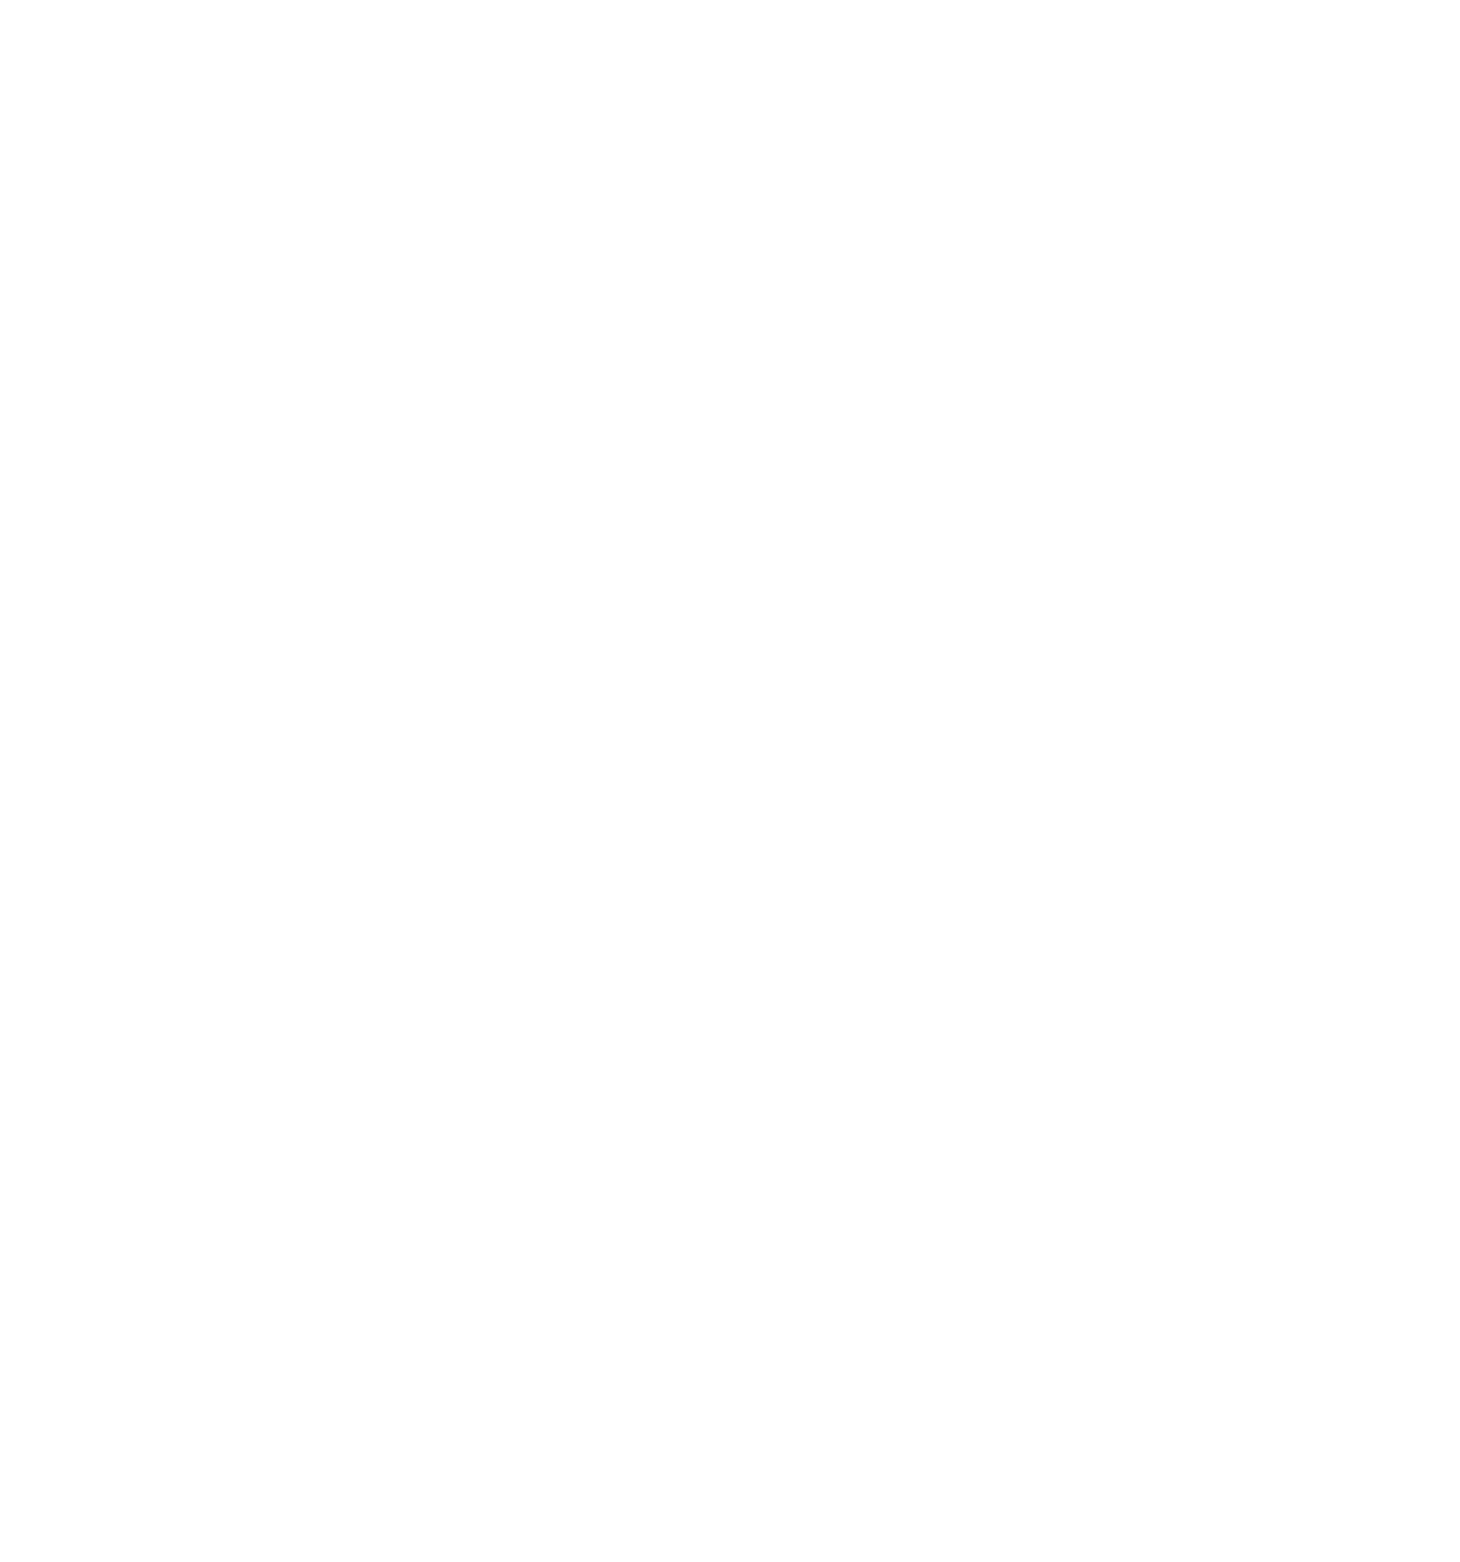 Barclays ETFs logo for dark backgrounds (transparent PNG)